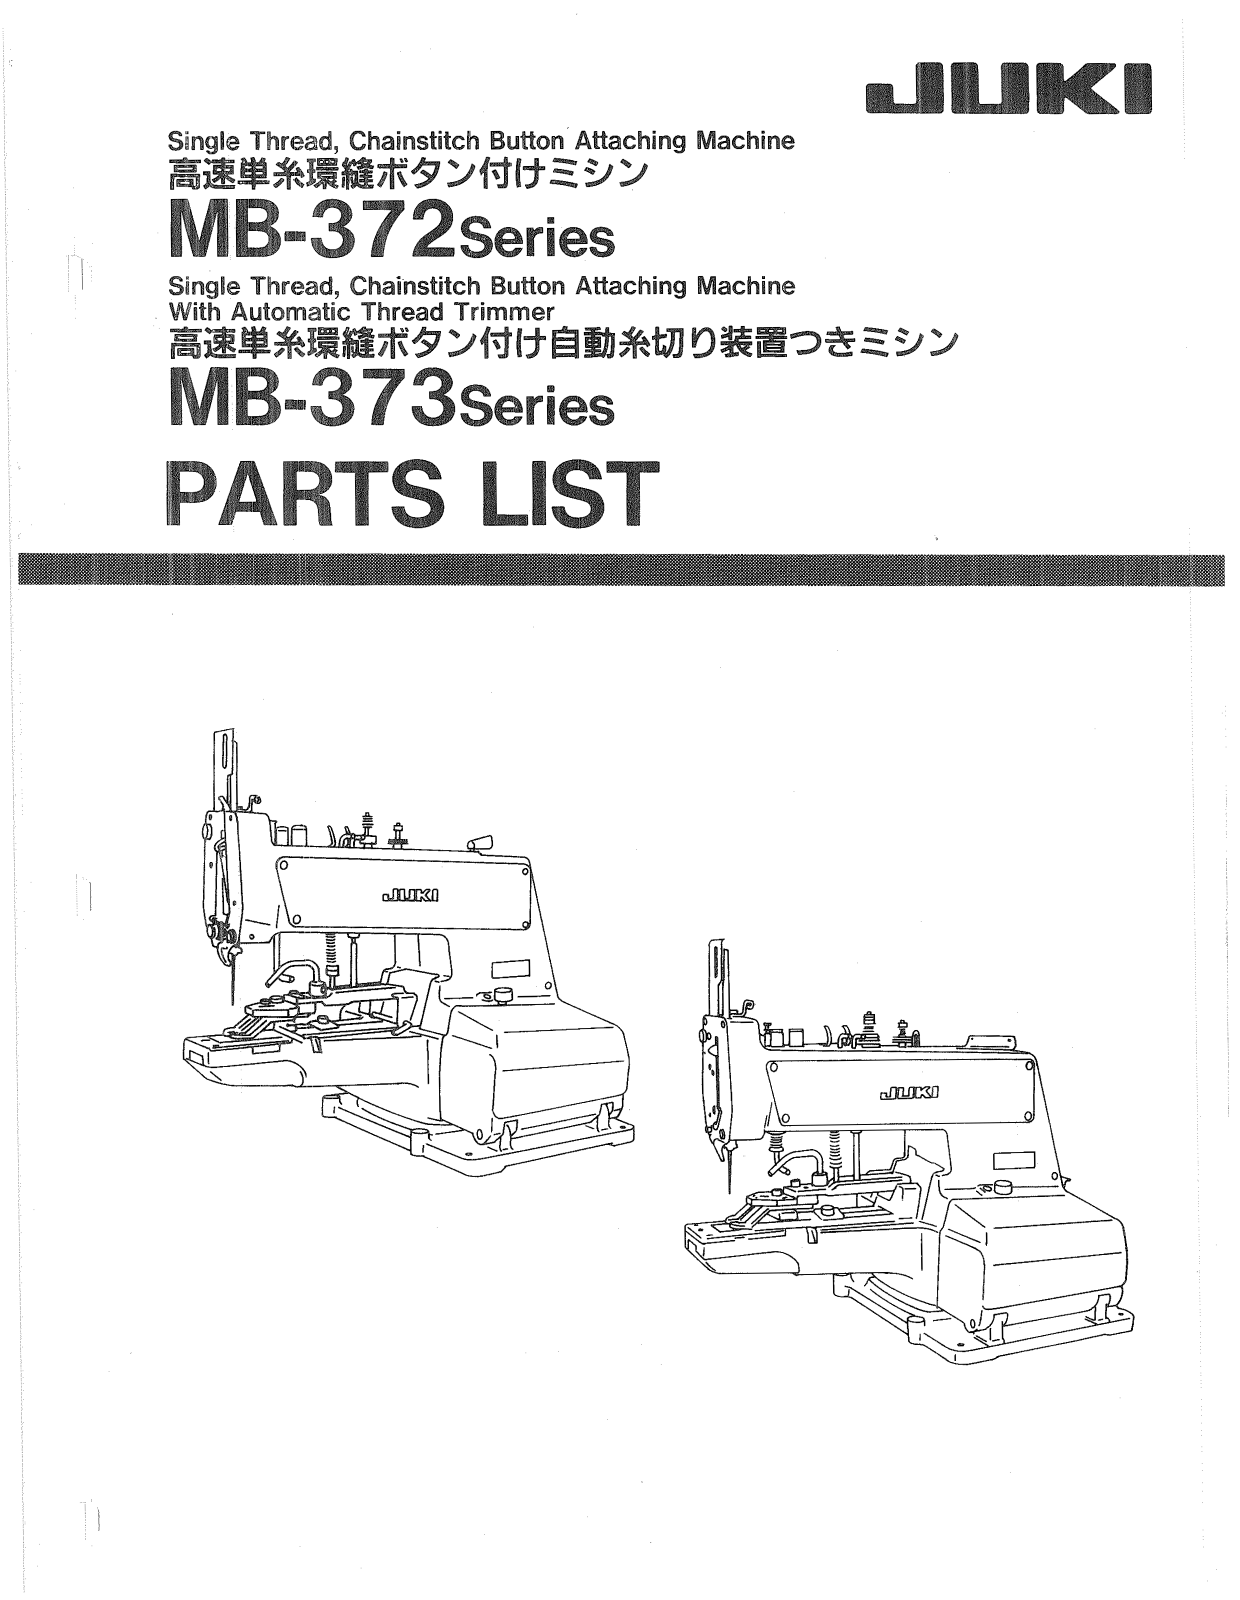 JUKI MB-372, MB-373 Parts List